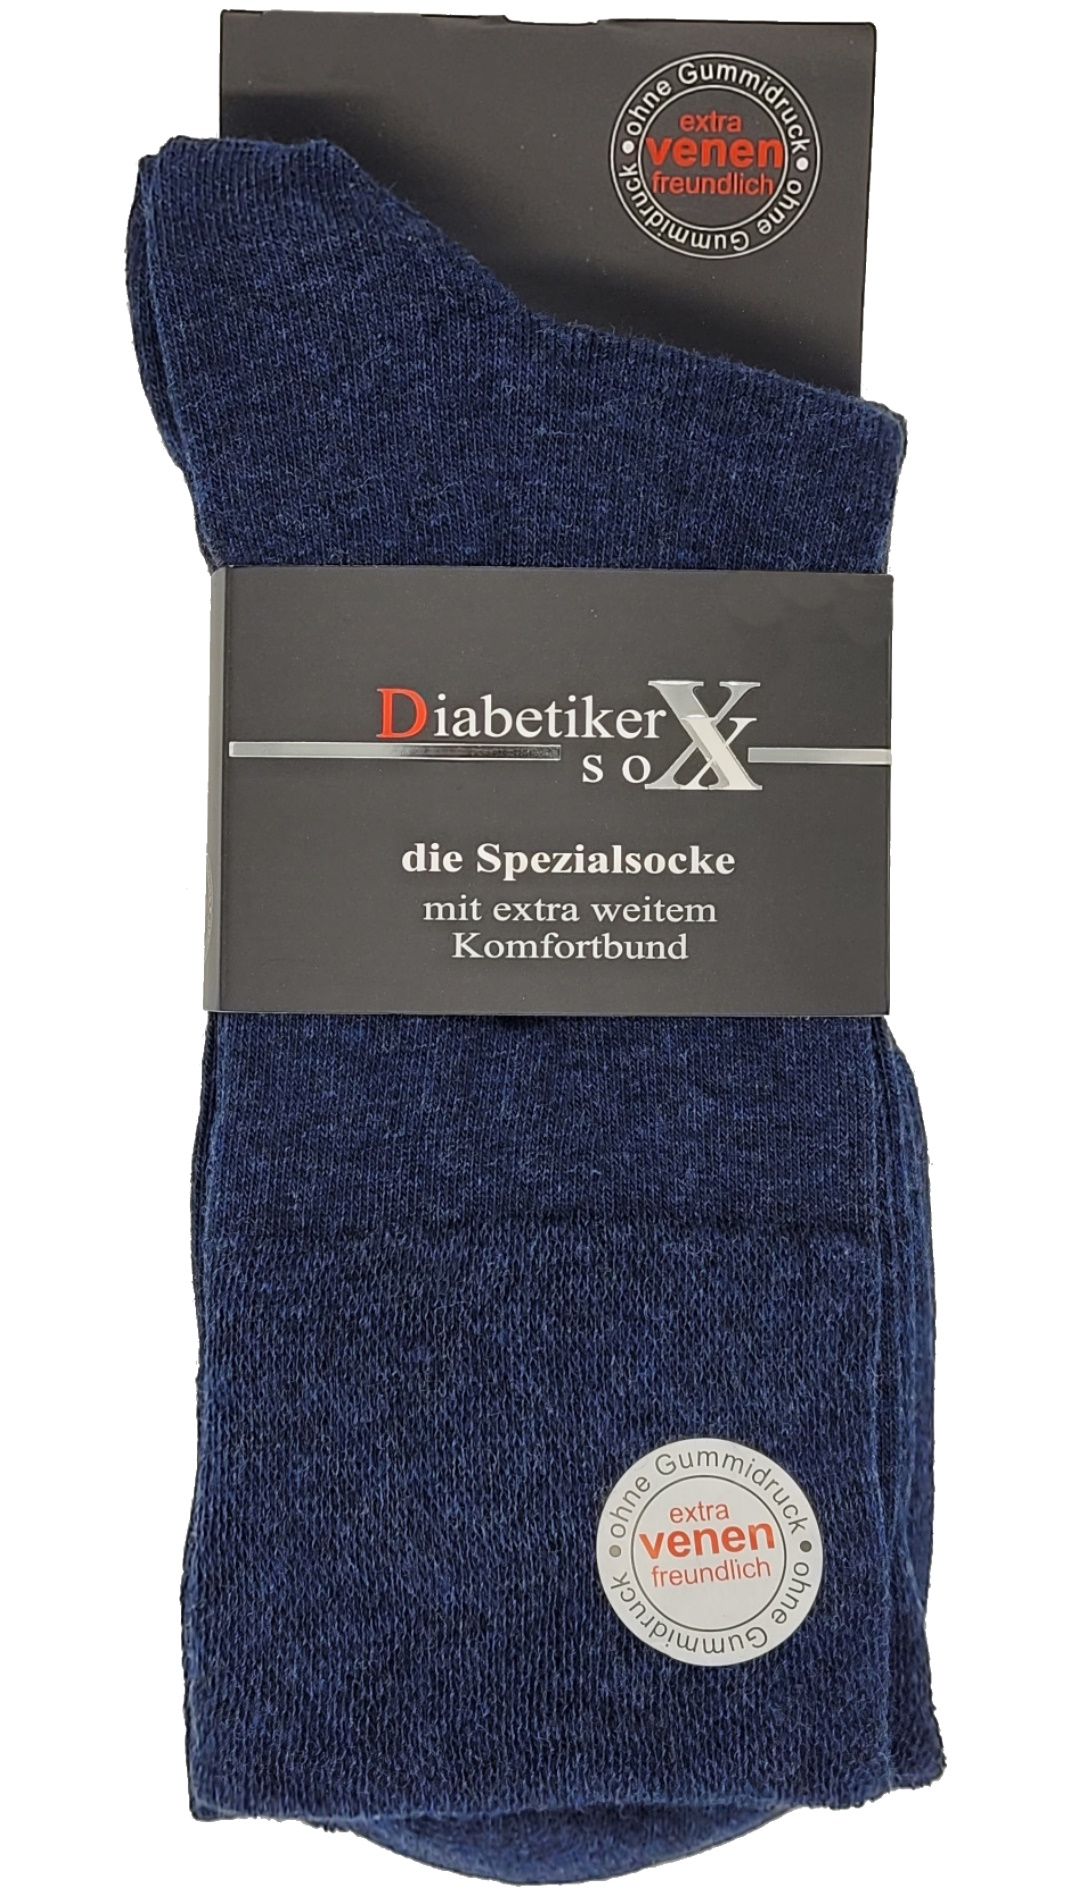 EXTRA – breites 97% 3 Diabetikersocken Paar Bund Baumwolle